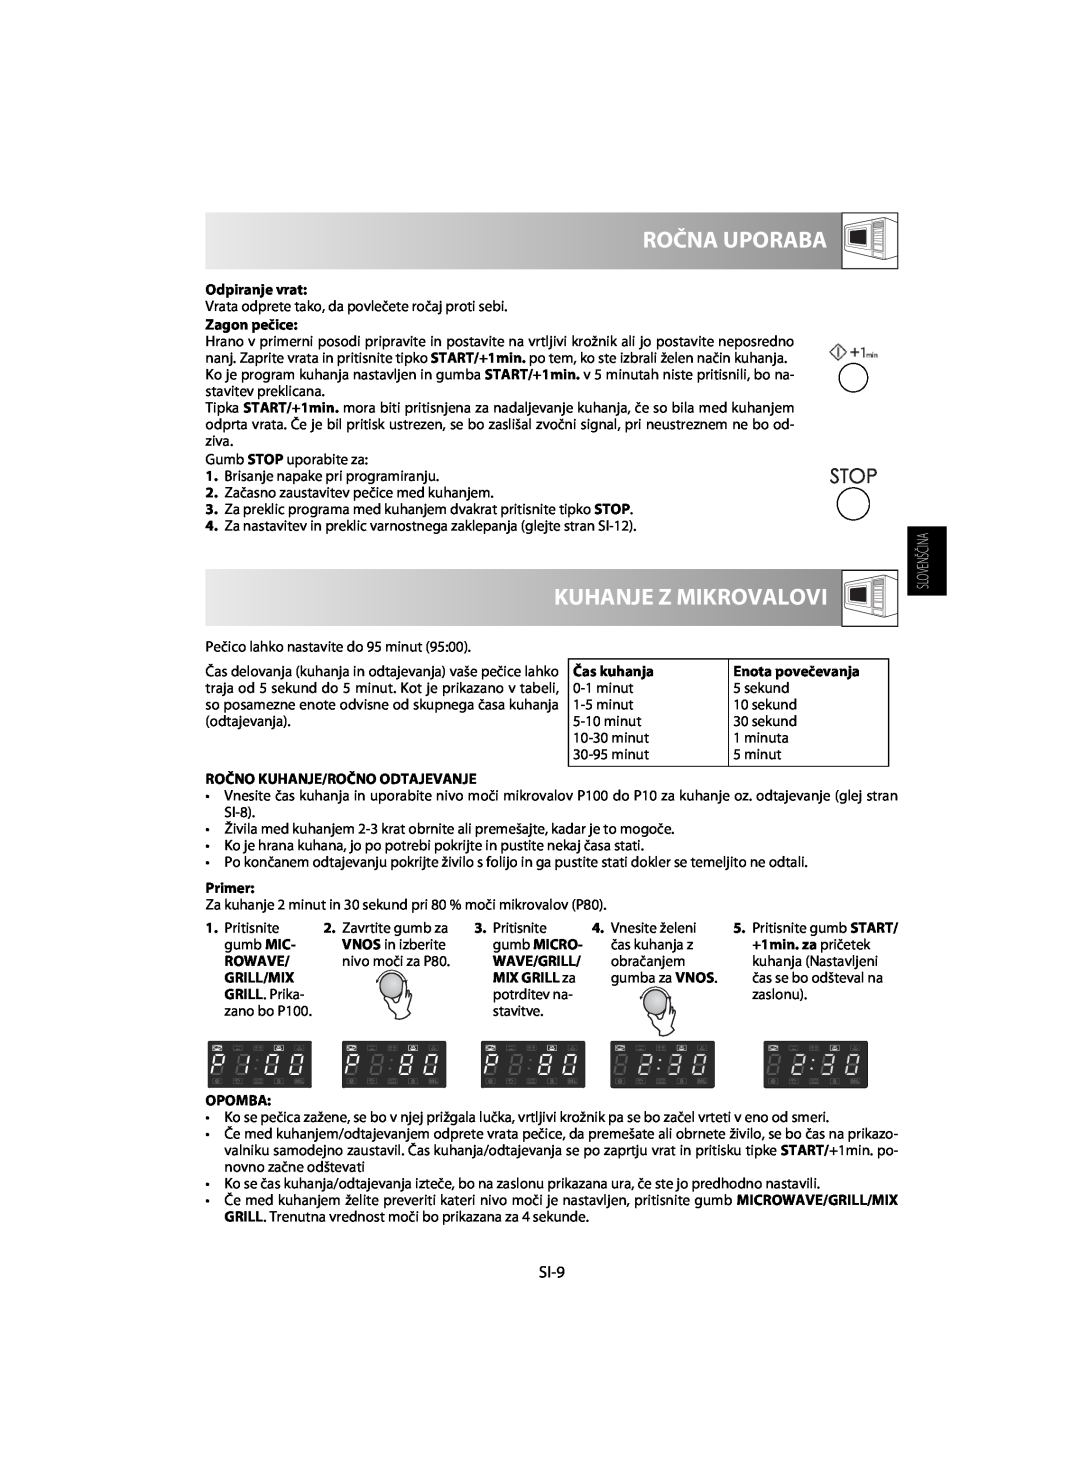 Sharp R-63ST operation manual Ročna Uporaba, Kuhanje Z Mikrovalovi, SI-9 